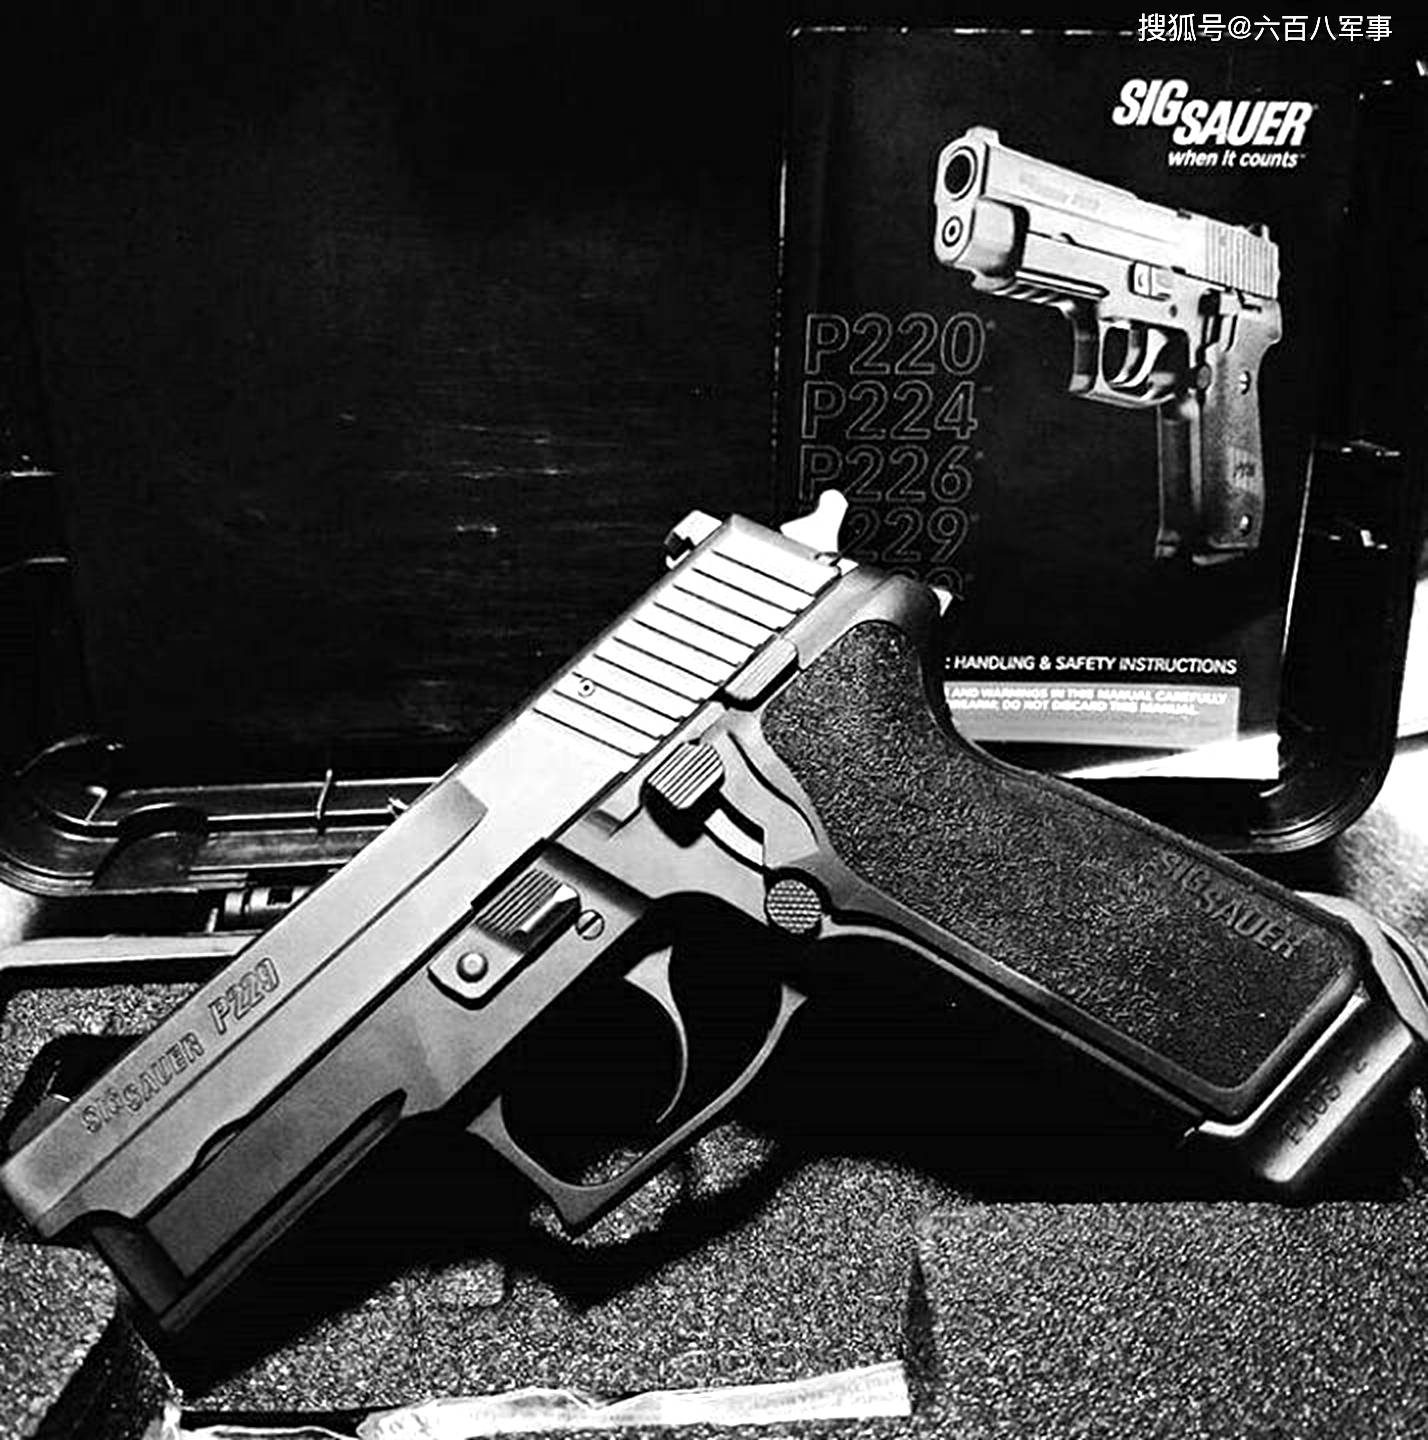 西格绍尔p229:sigsauerp229手枪采用